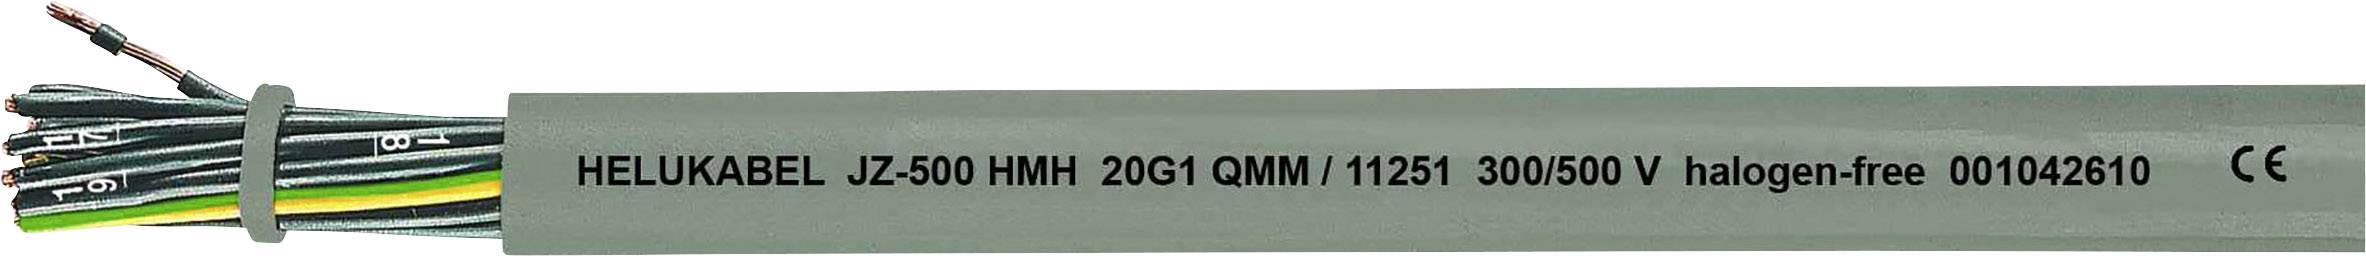 HELUKABEL JZ-500 HMH Steuerleitung 4 G 1 mm² Grau 11243-500 500 m